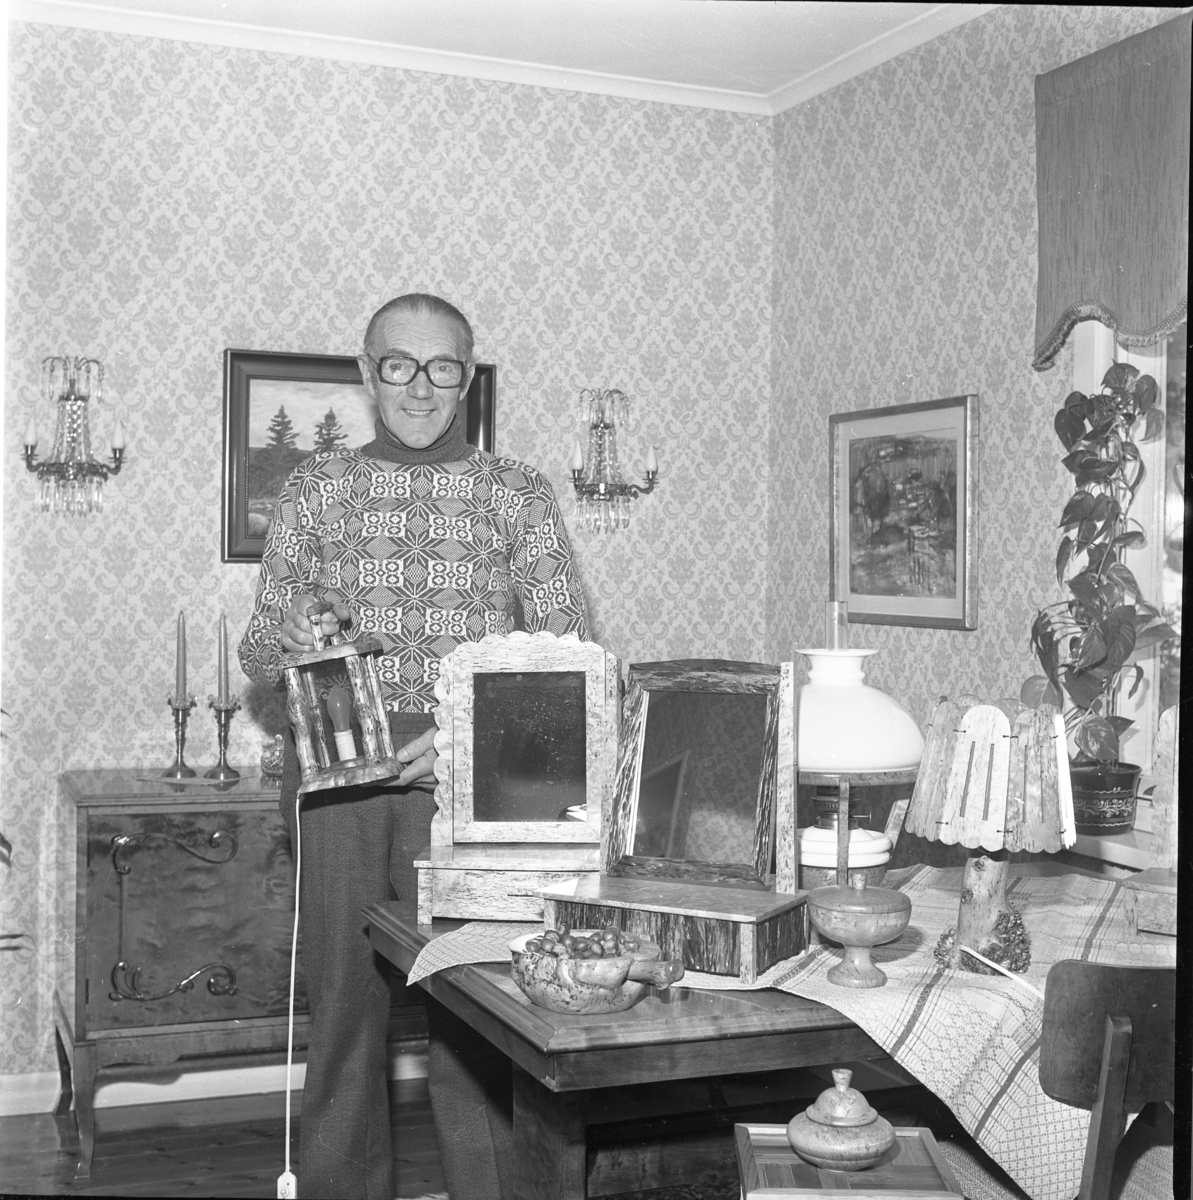 En man står i sitt hem omgiven av föremål, bland annat pigtittare. skålar och lampor. Förmodligen tillverkade av honom själv. Han håller en elektrifierade lykta i handen.